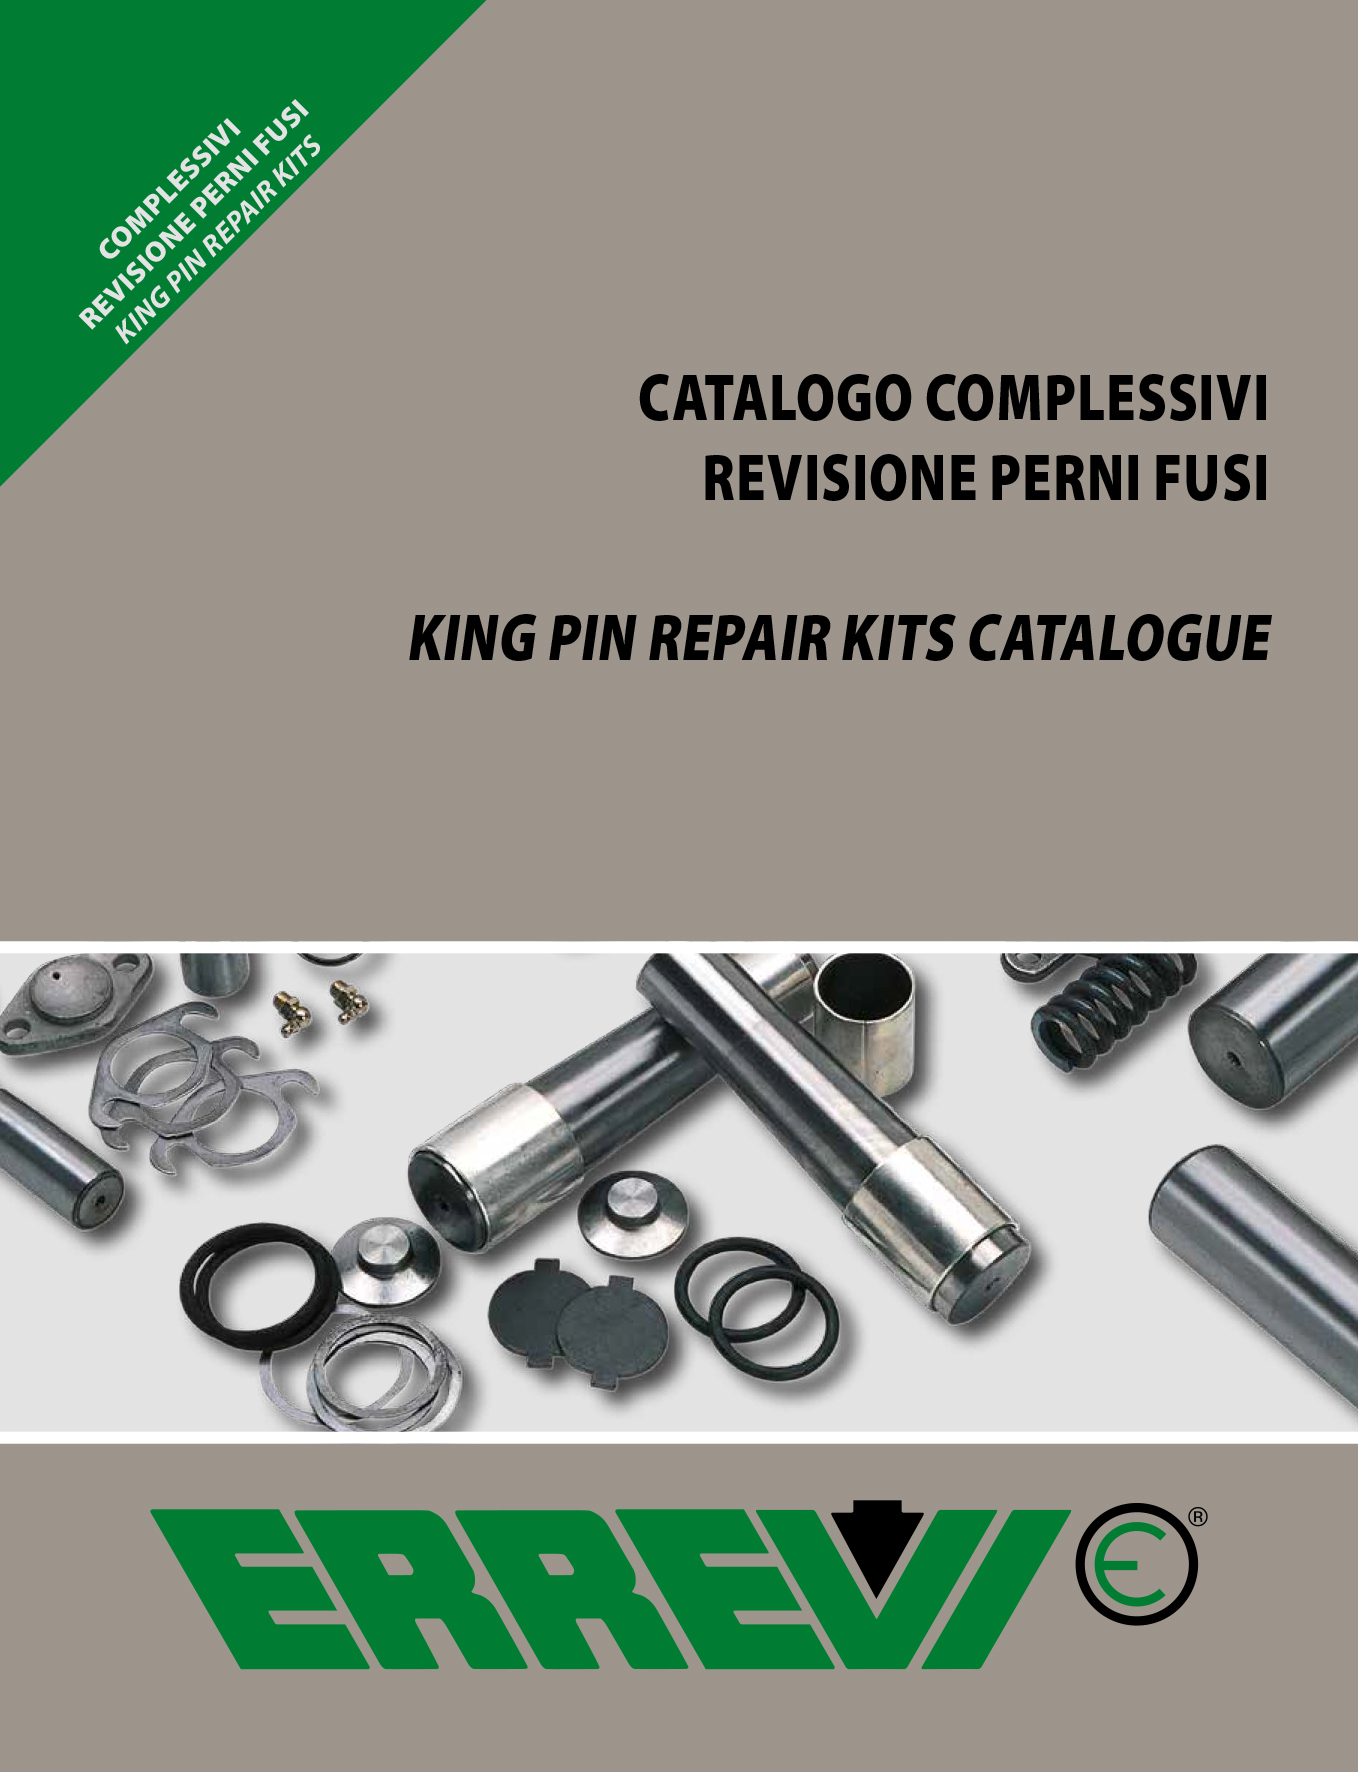 Catalogo Kit di Riparazione, Catalogo Complessivi